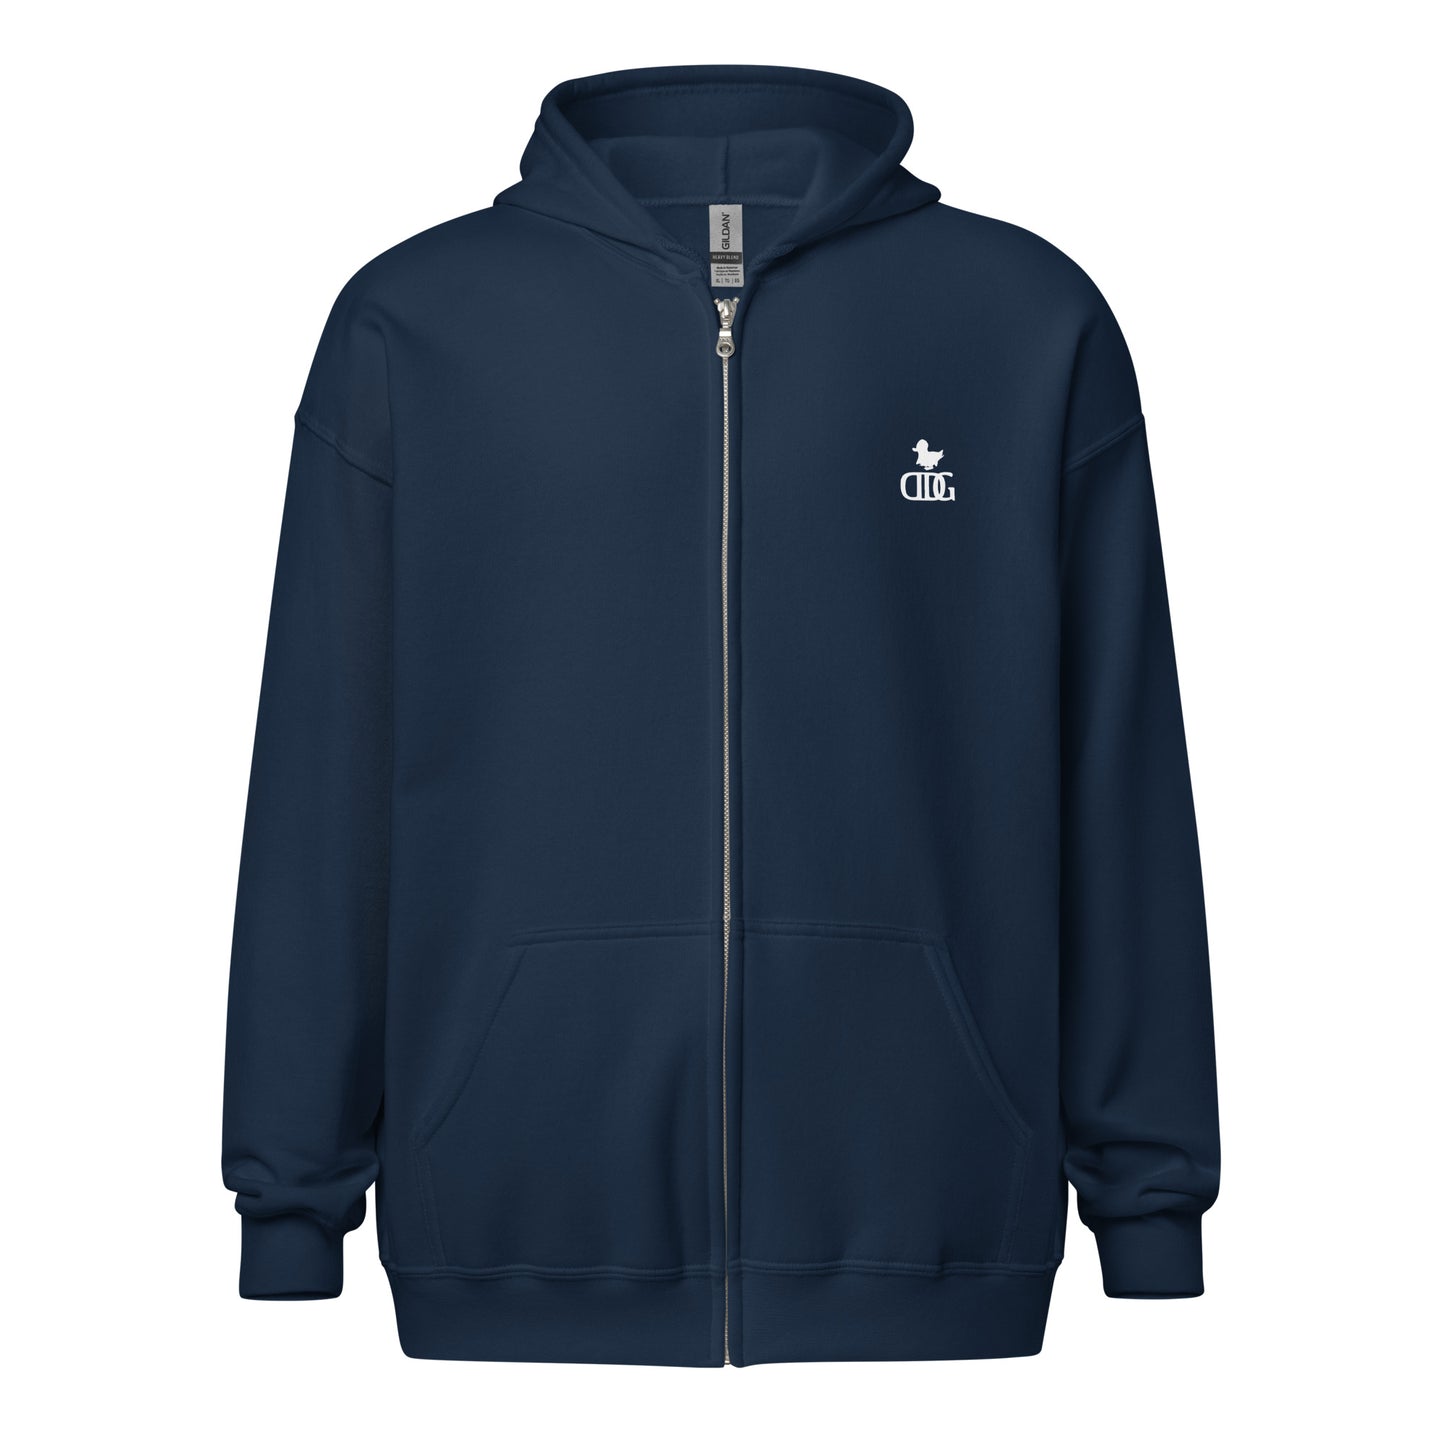 DDG Unisex zip hoodie